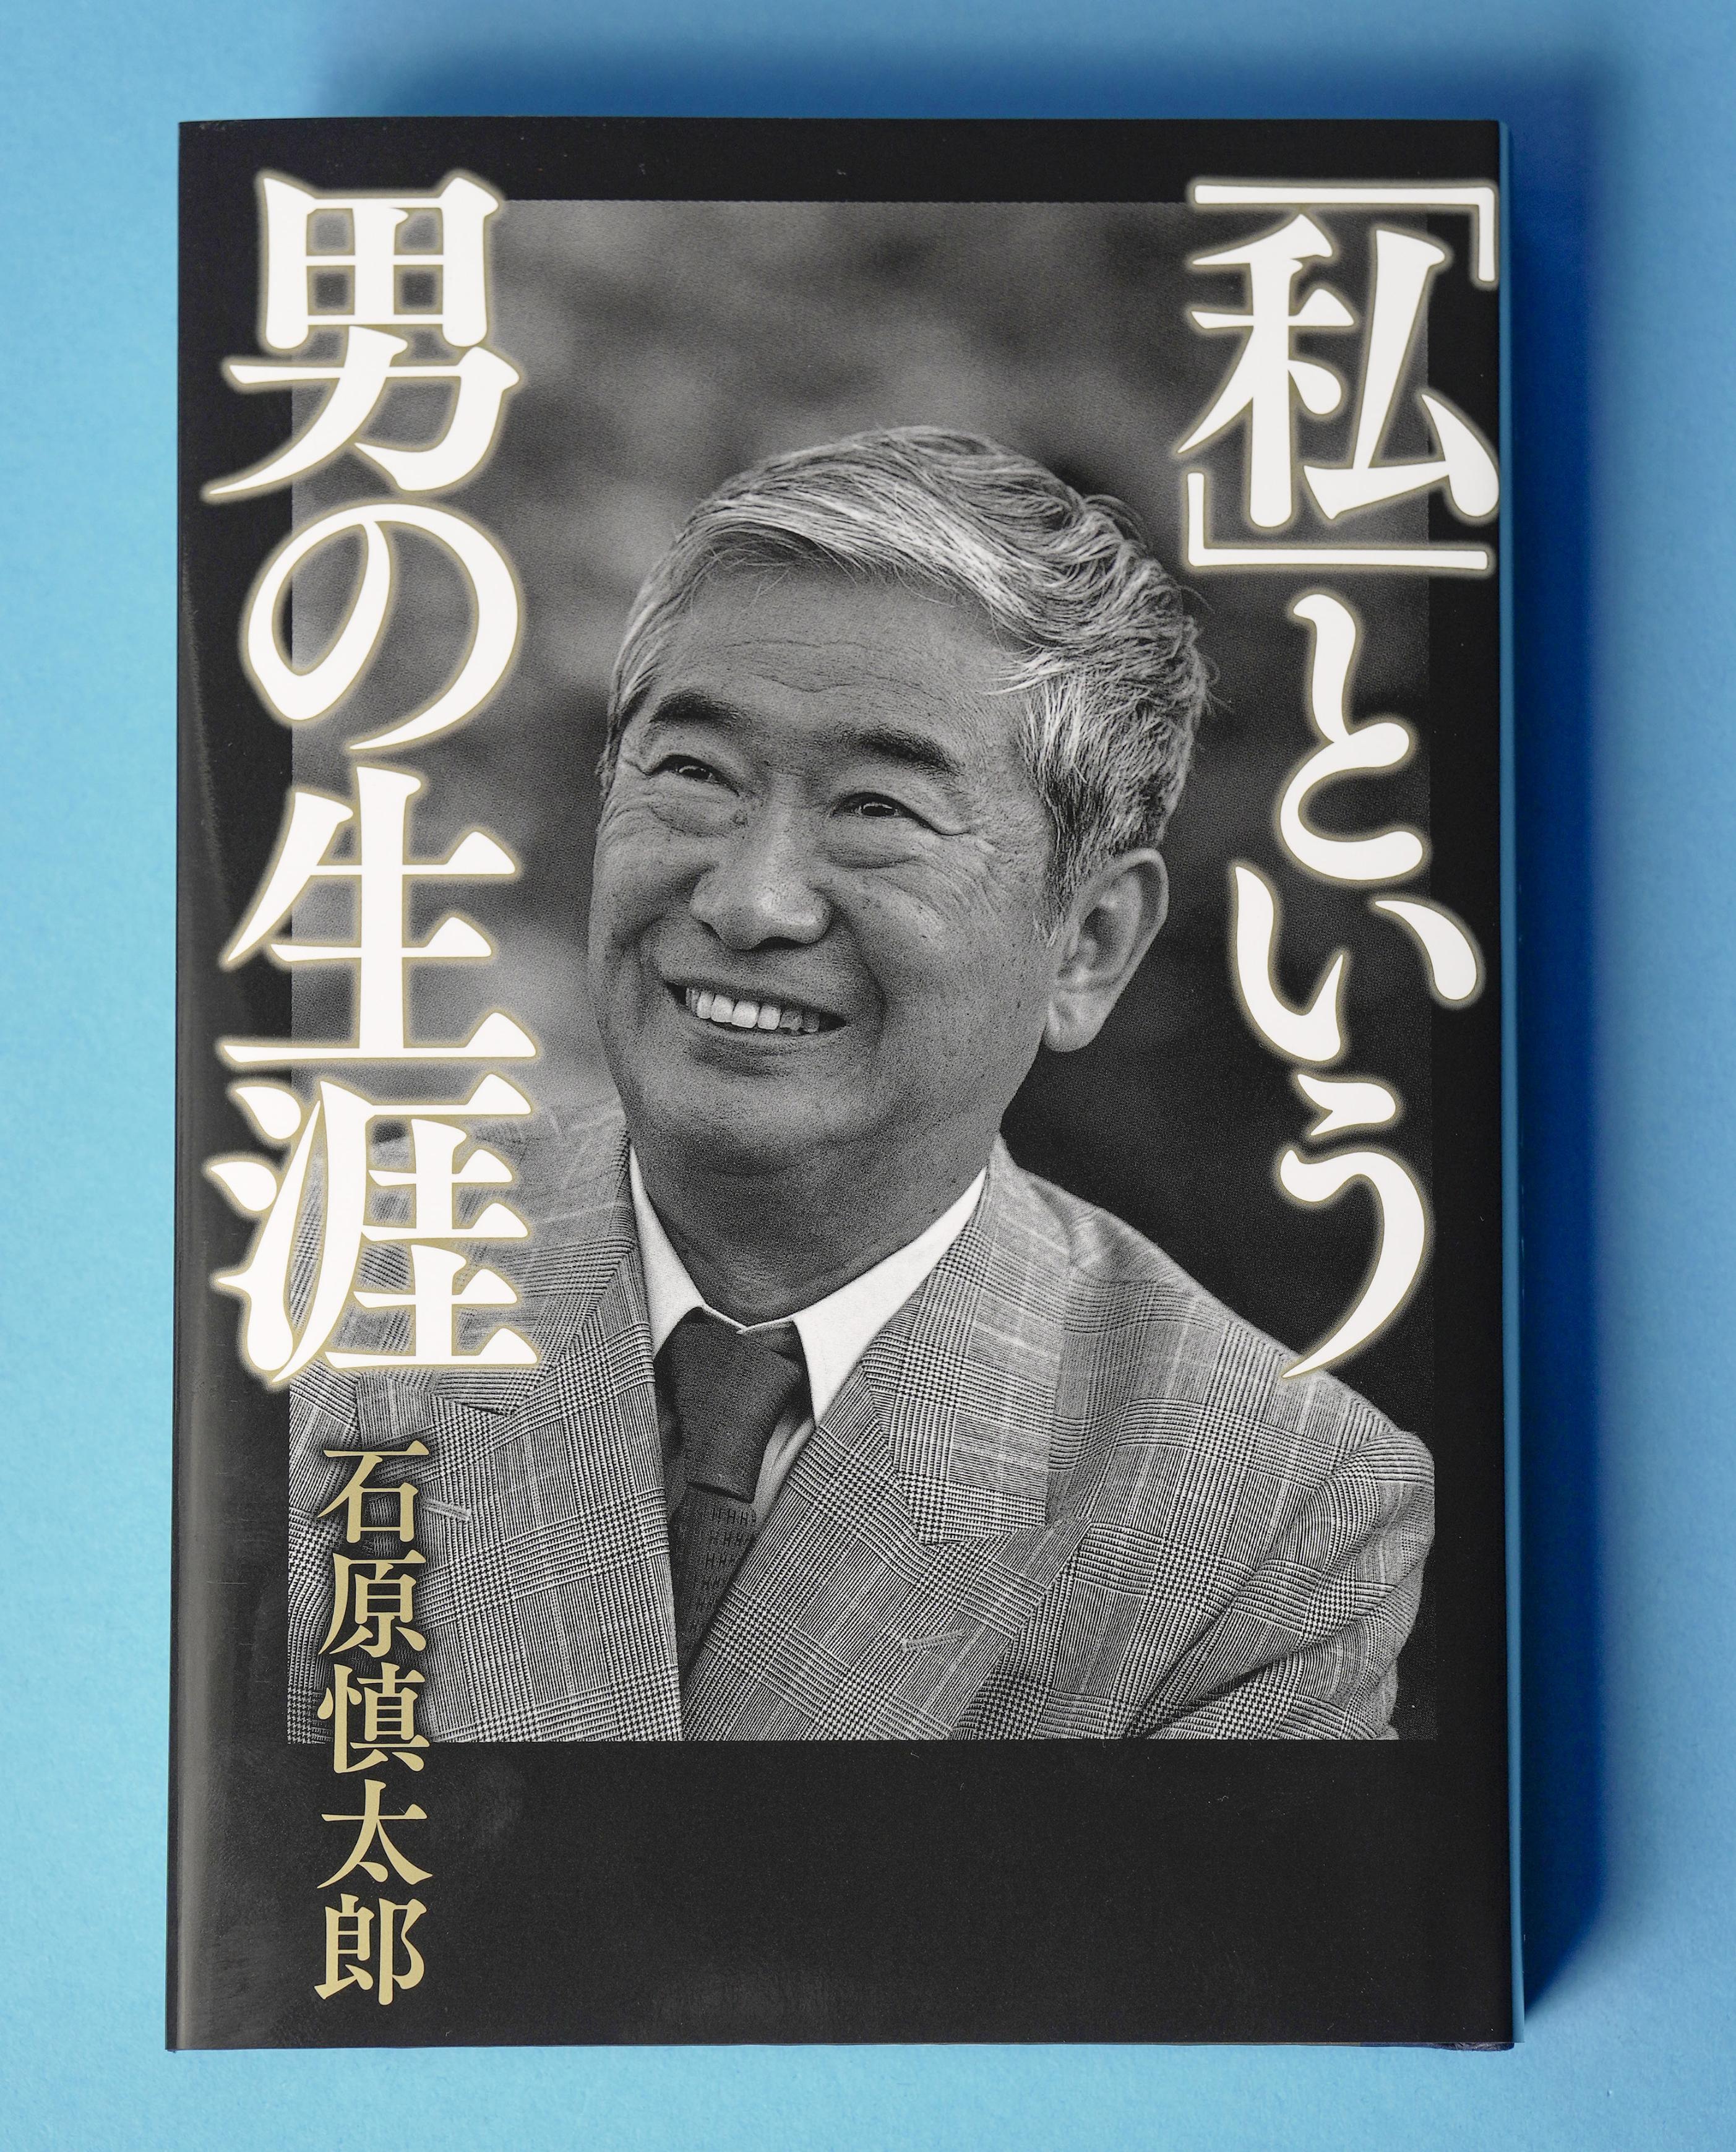 石原慎太郎さん、自伝書いていた 自身と妻の死後の刊行を希望し…６０代 